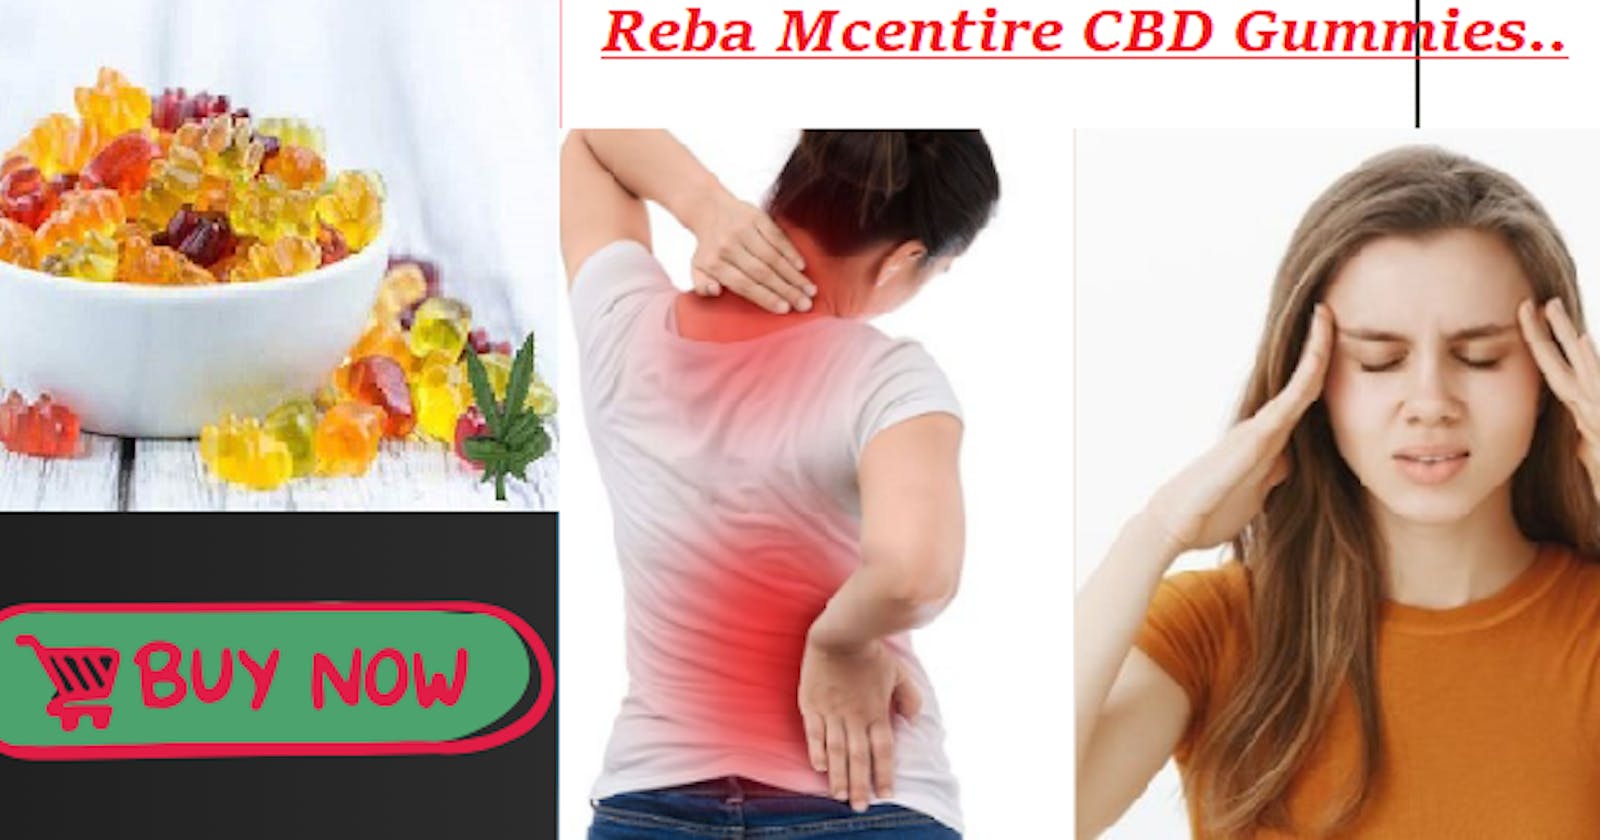 Reba Mcentire CBD Gummies Reviews Reduce Anxiety, Sadness & Chronic Pain.